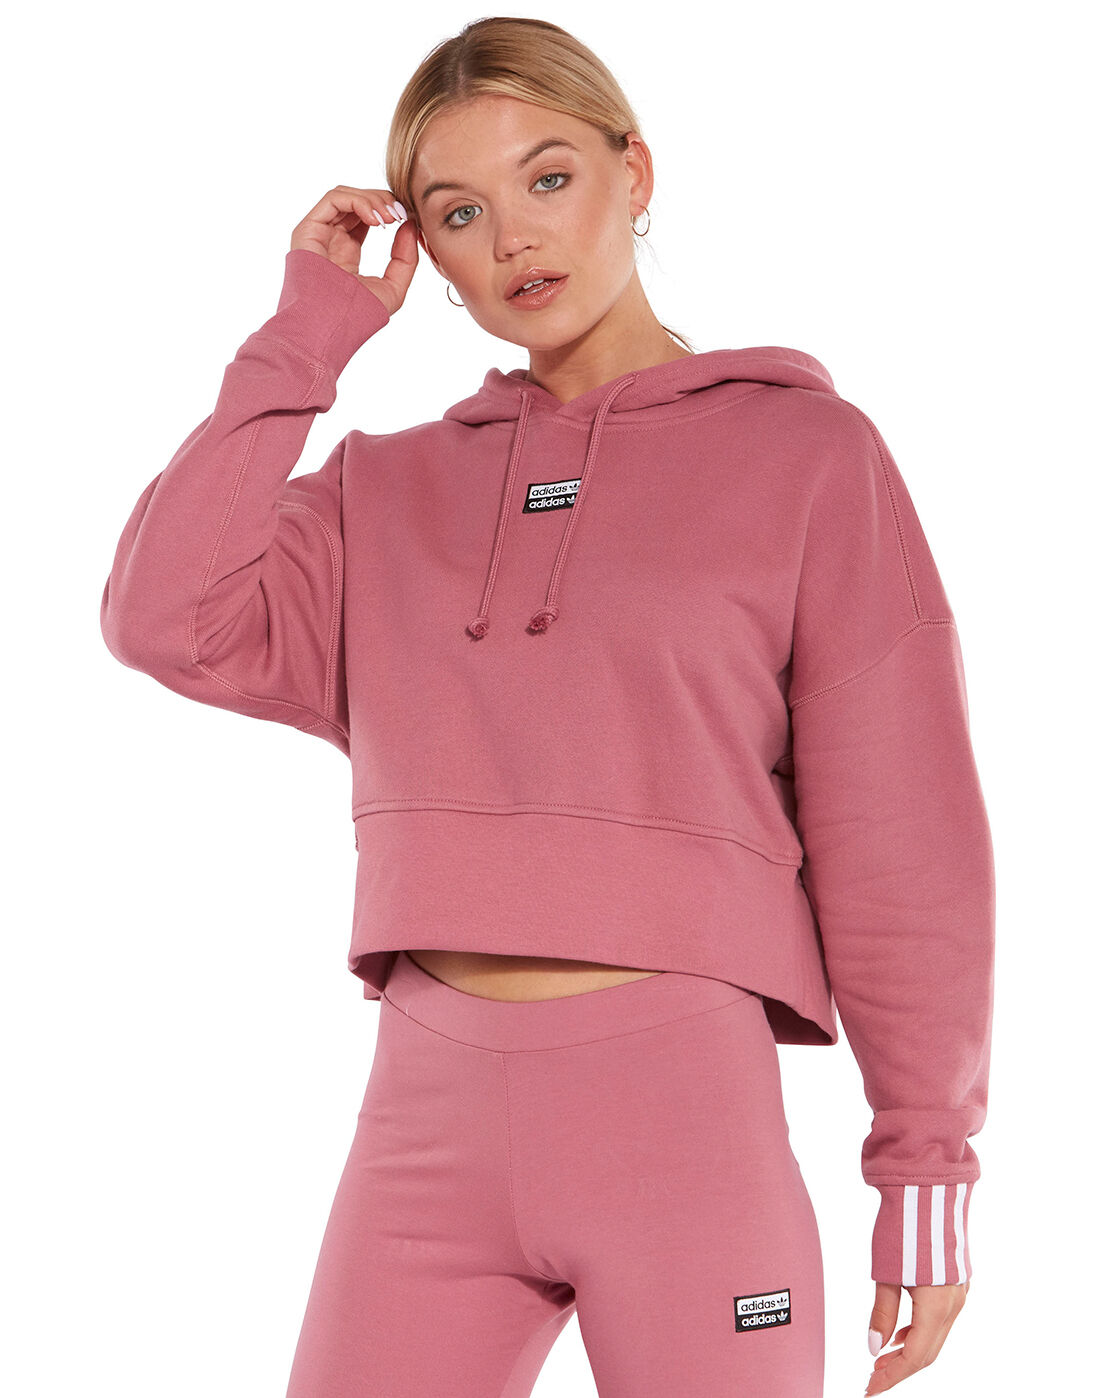 adidas pink cropped hoodie